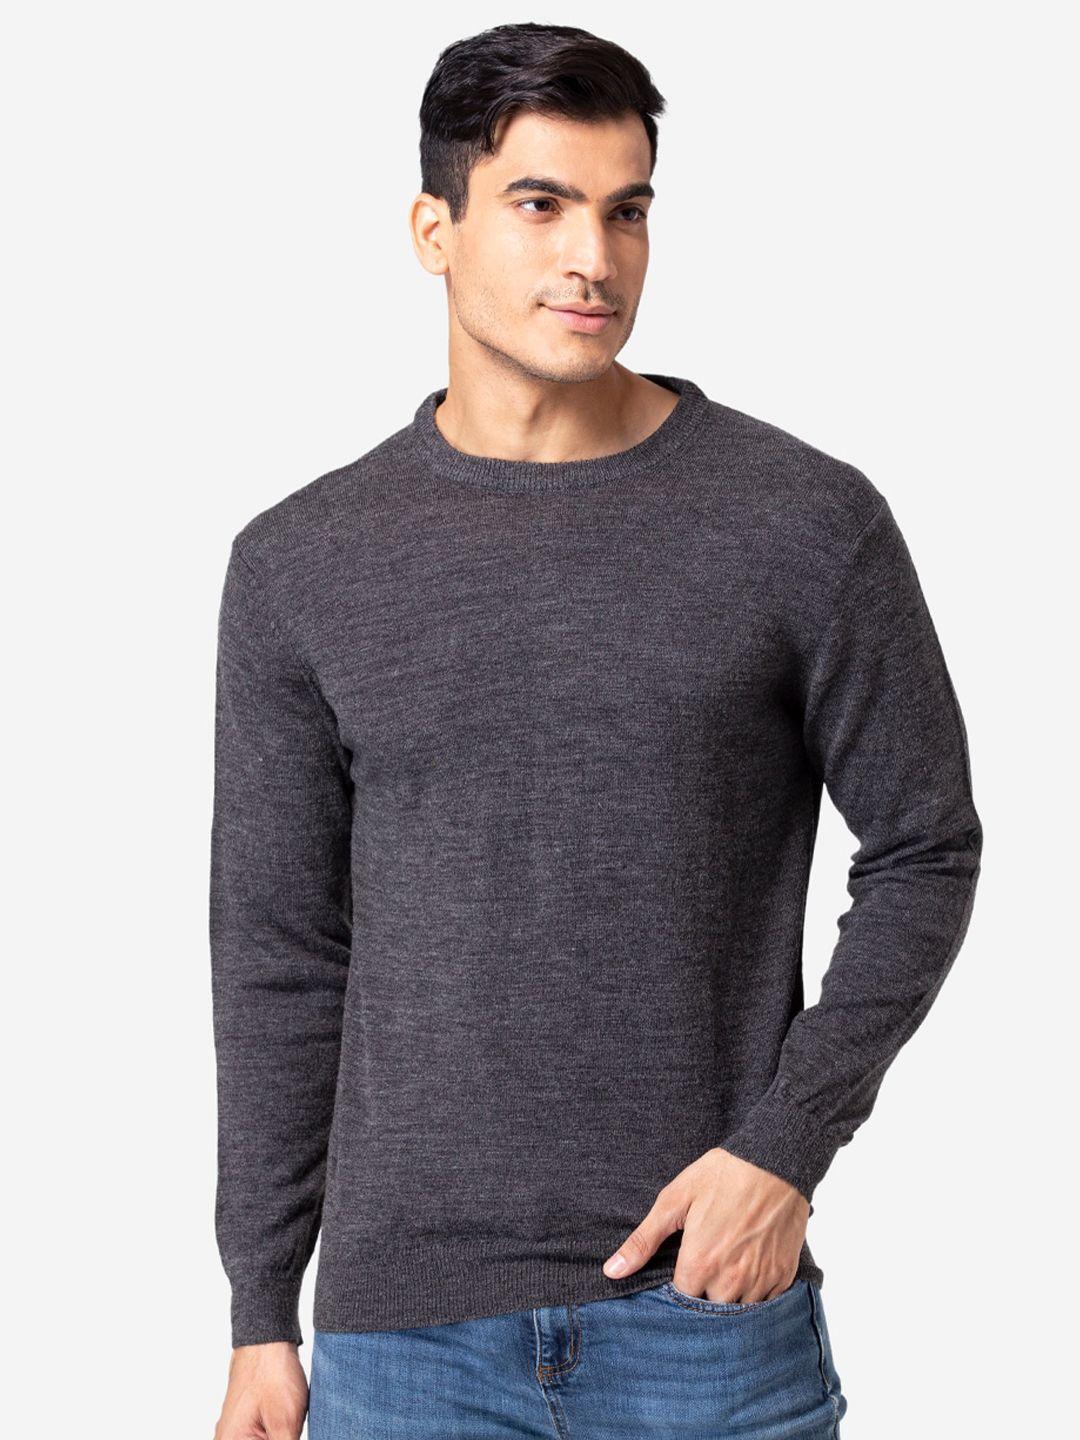 allen-cooper-men-grey-round-neck-sweater